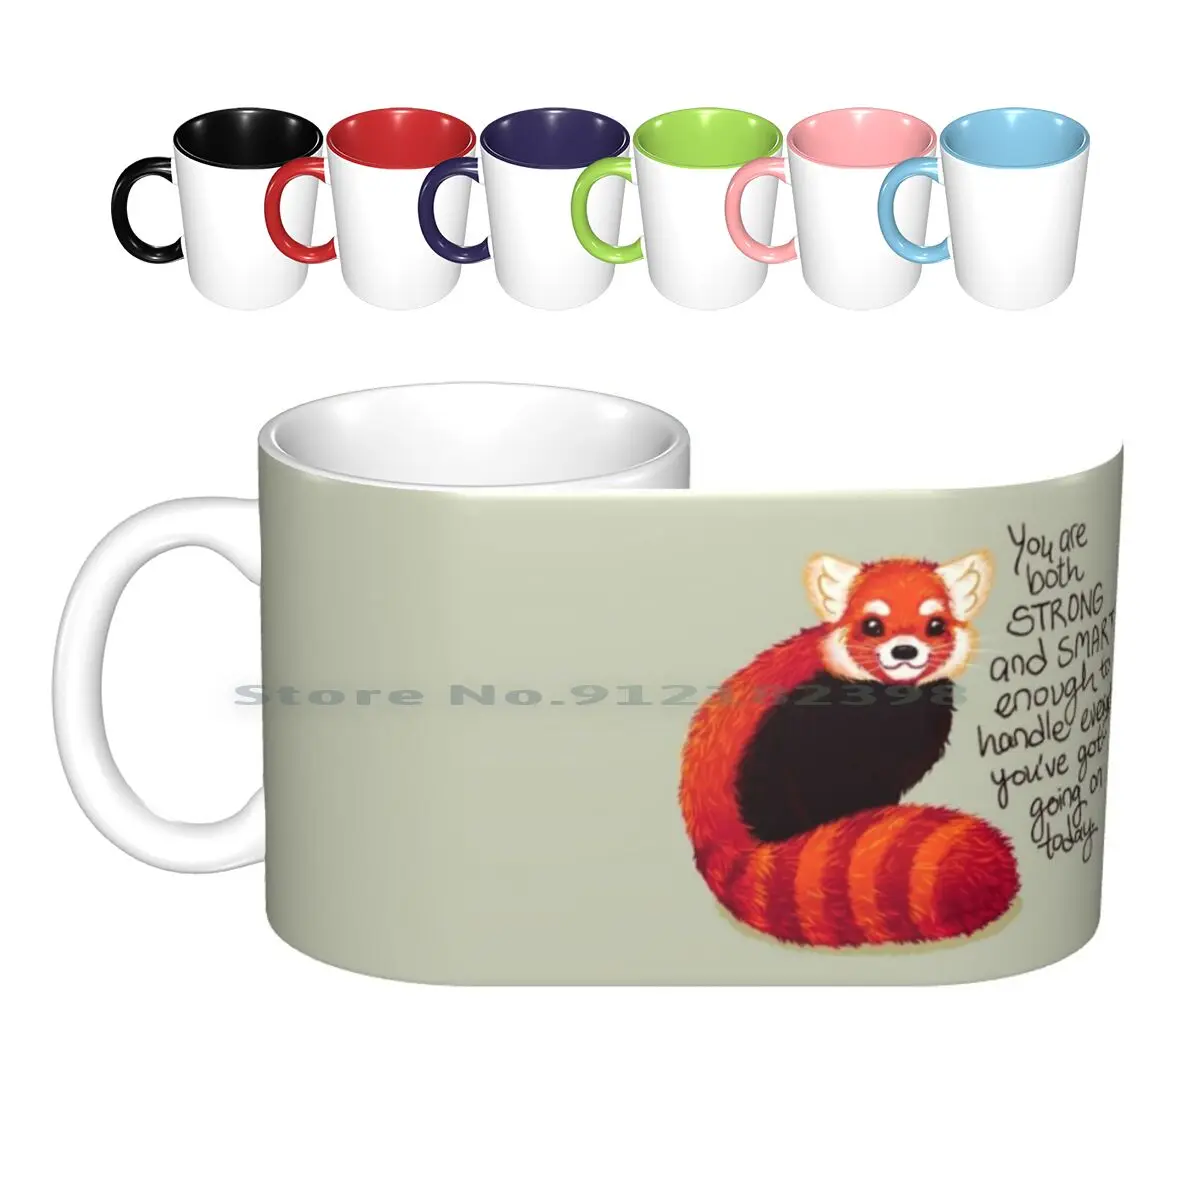 

" You Are Both Strong And Smart Enough " Red Panda Ceramic Mugs Coffee Cups Milk Tea Mug Cute Mental Health Self Love Self Car